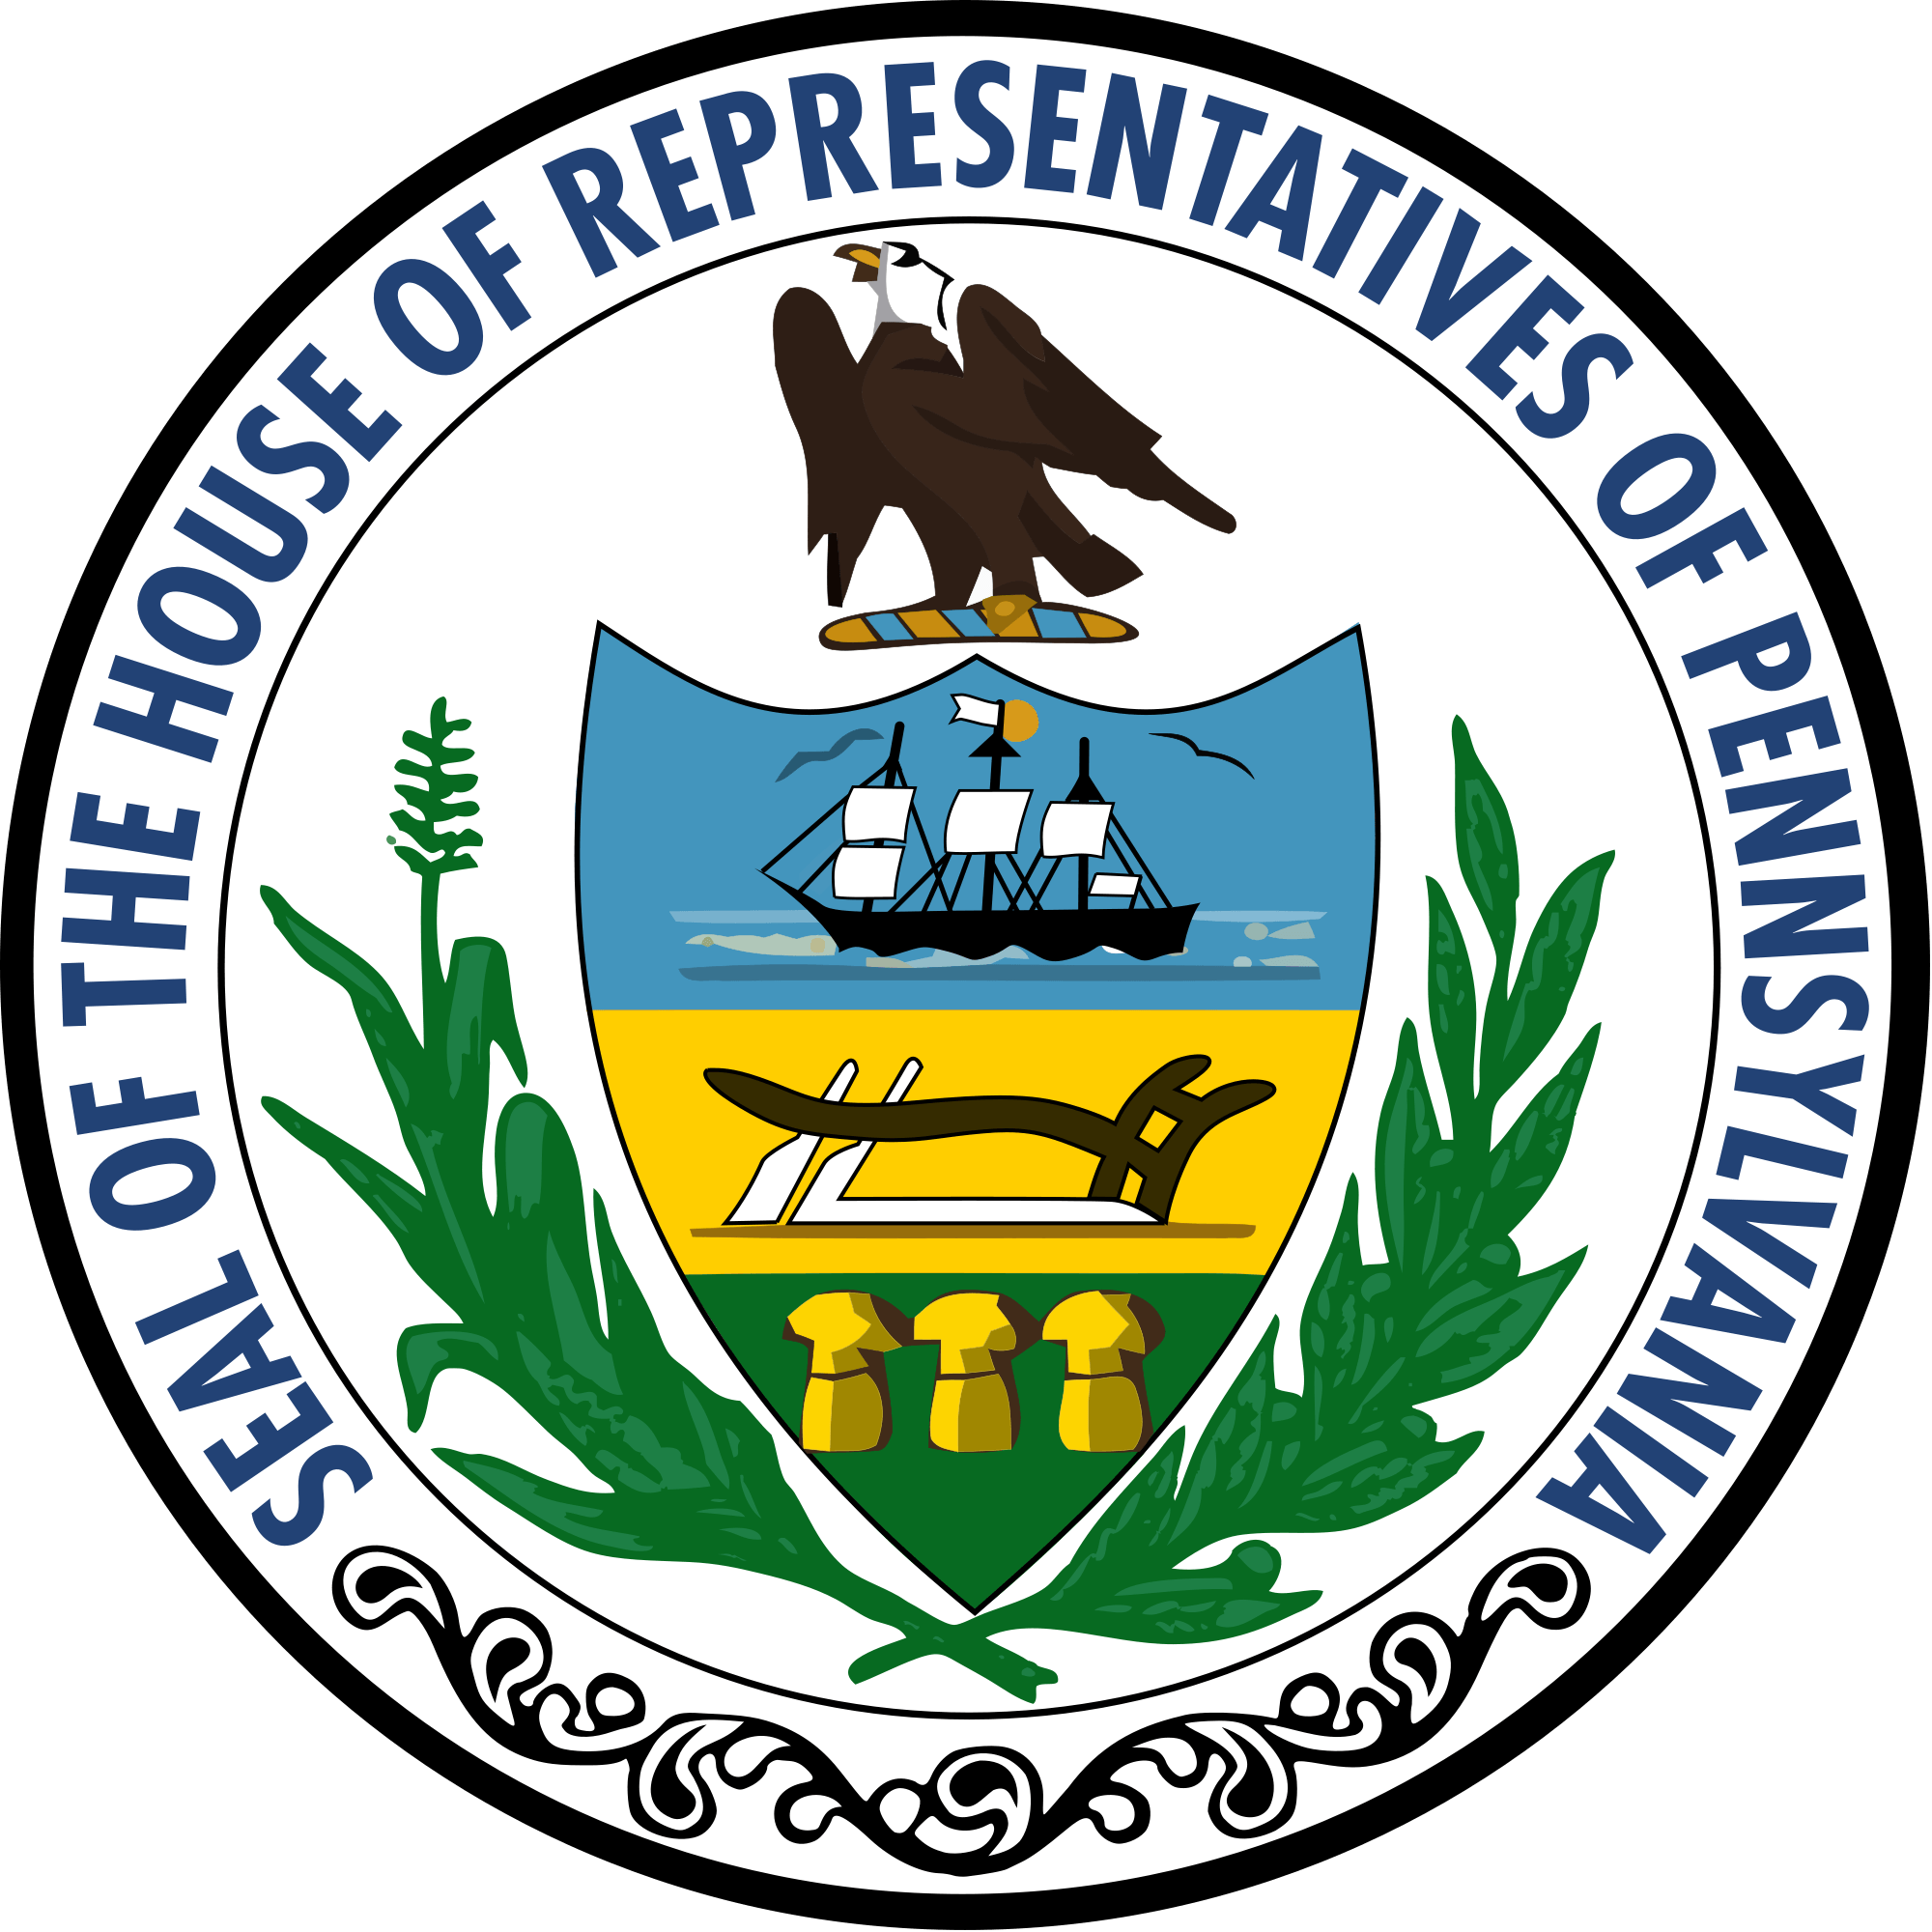 The Pennsylvania Logo - File:Seal of the Pennsylvania House of Representatives.svg ...